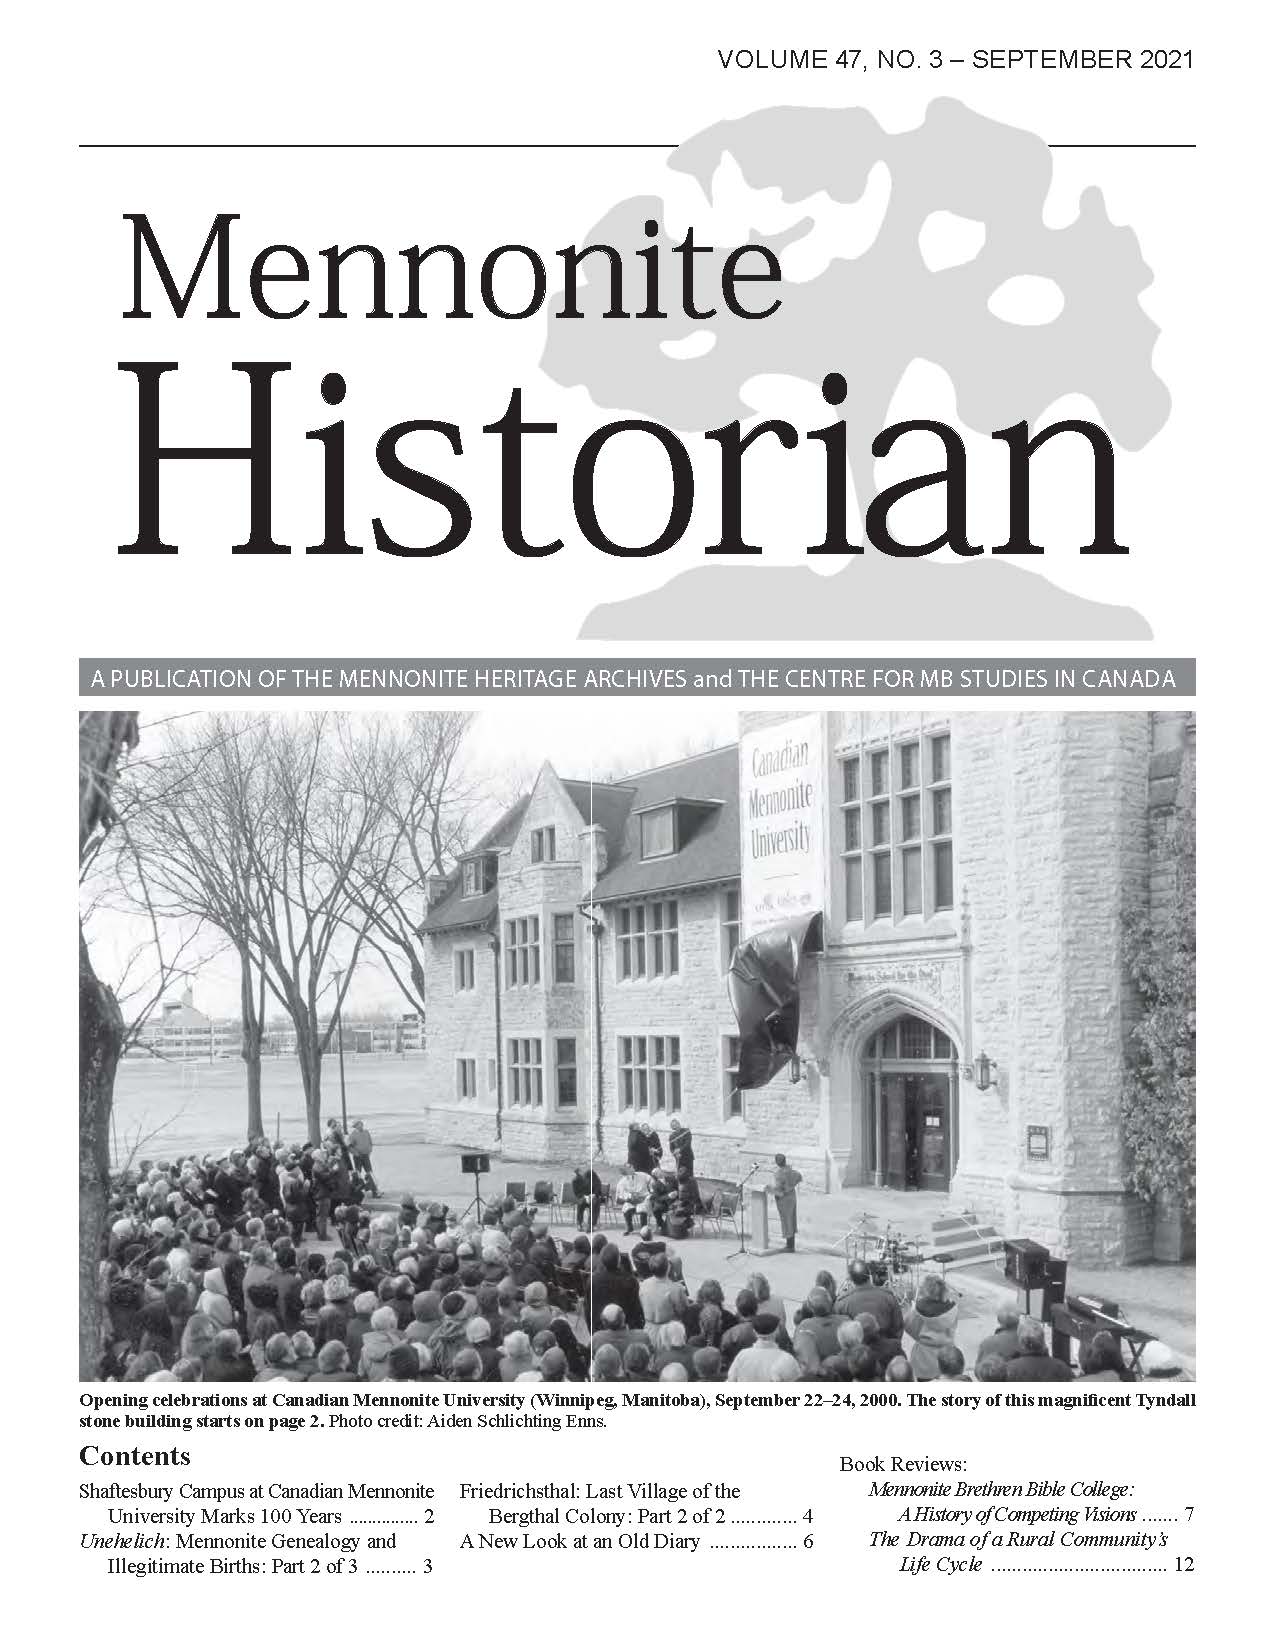 Mennonite Historian (September 2021)